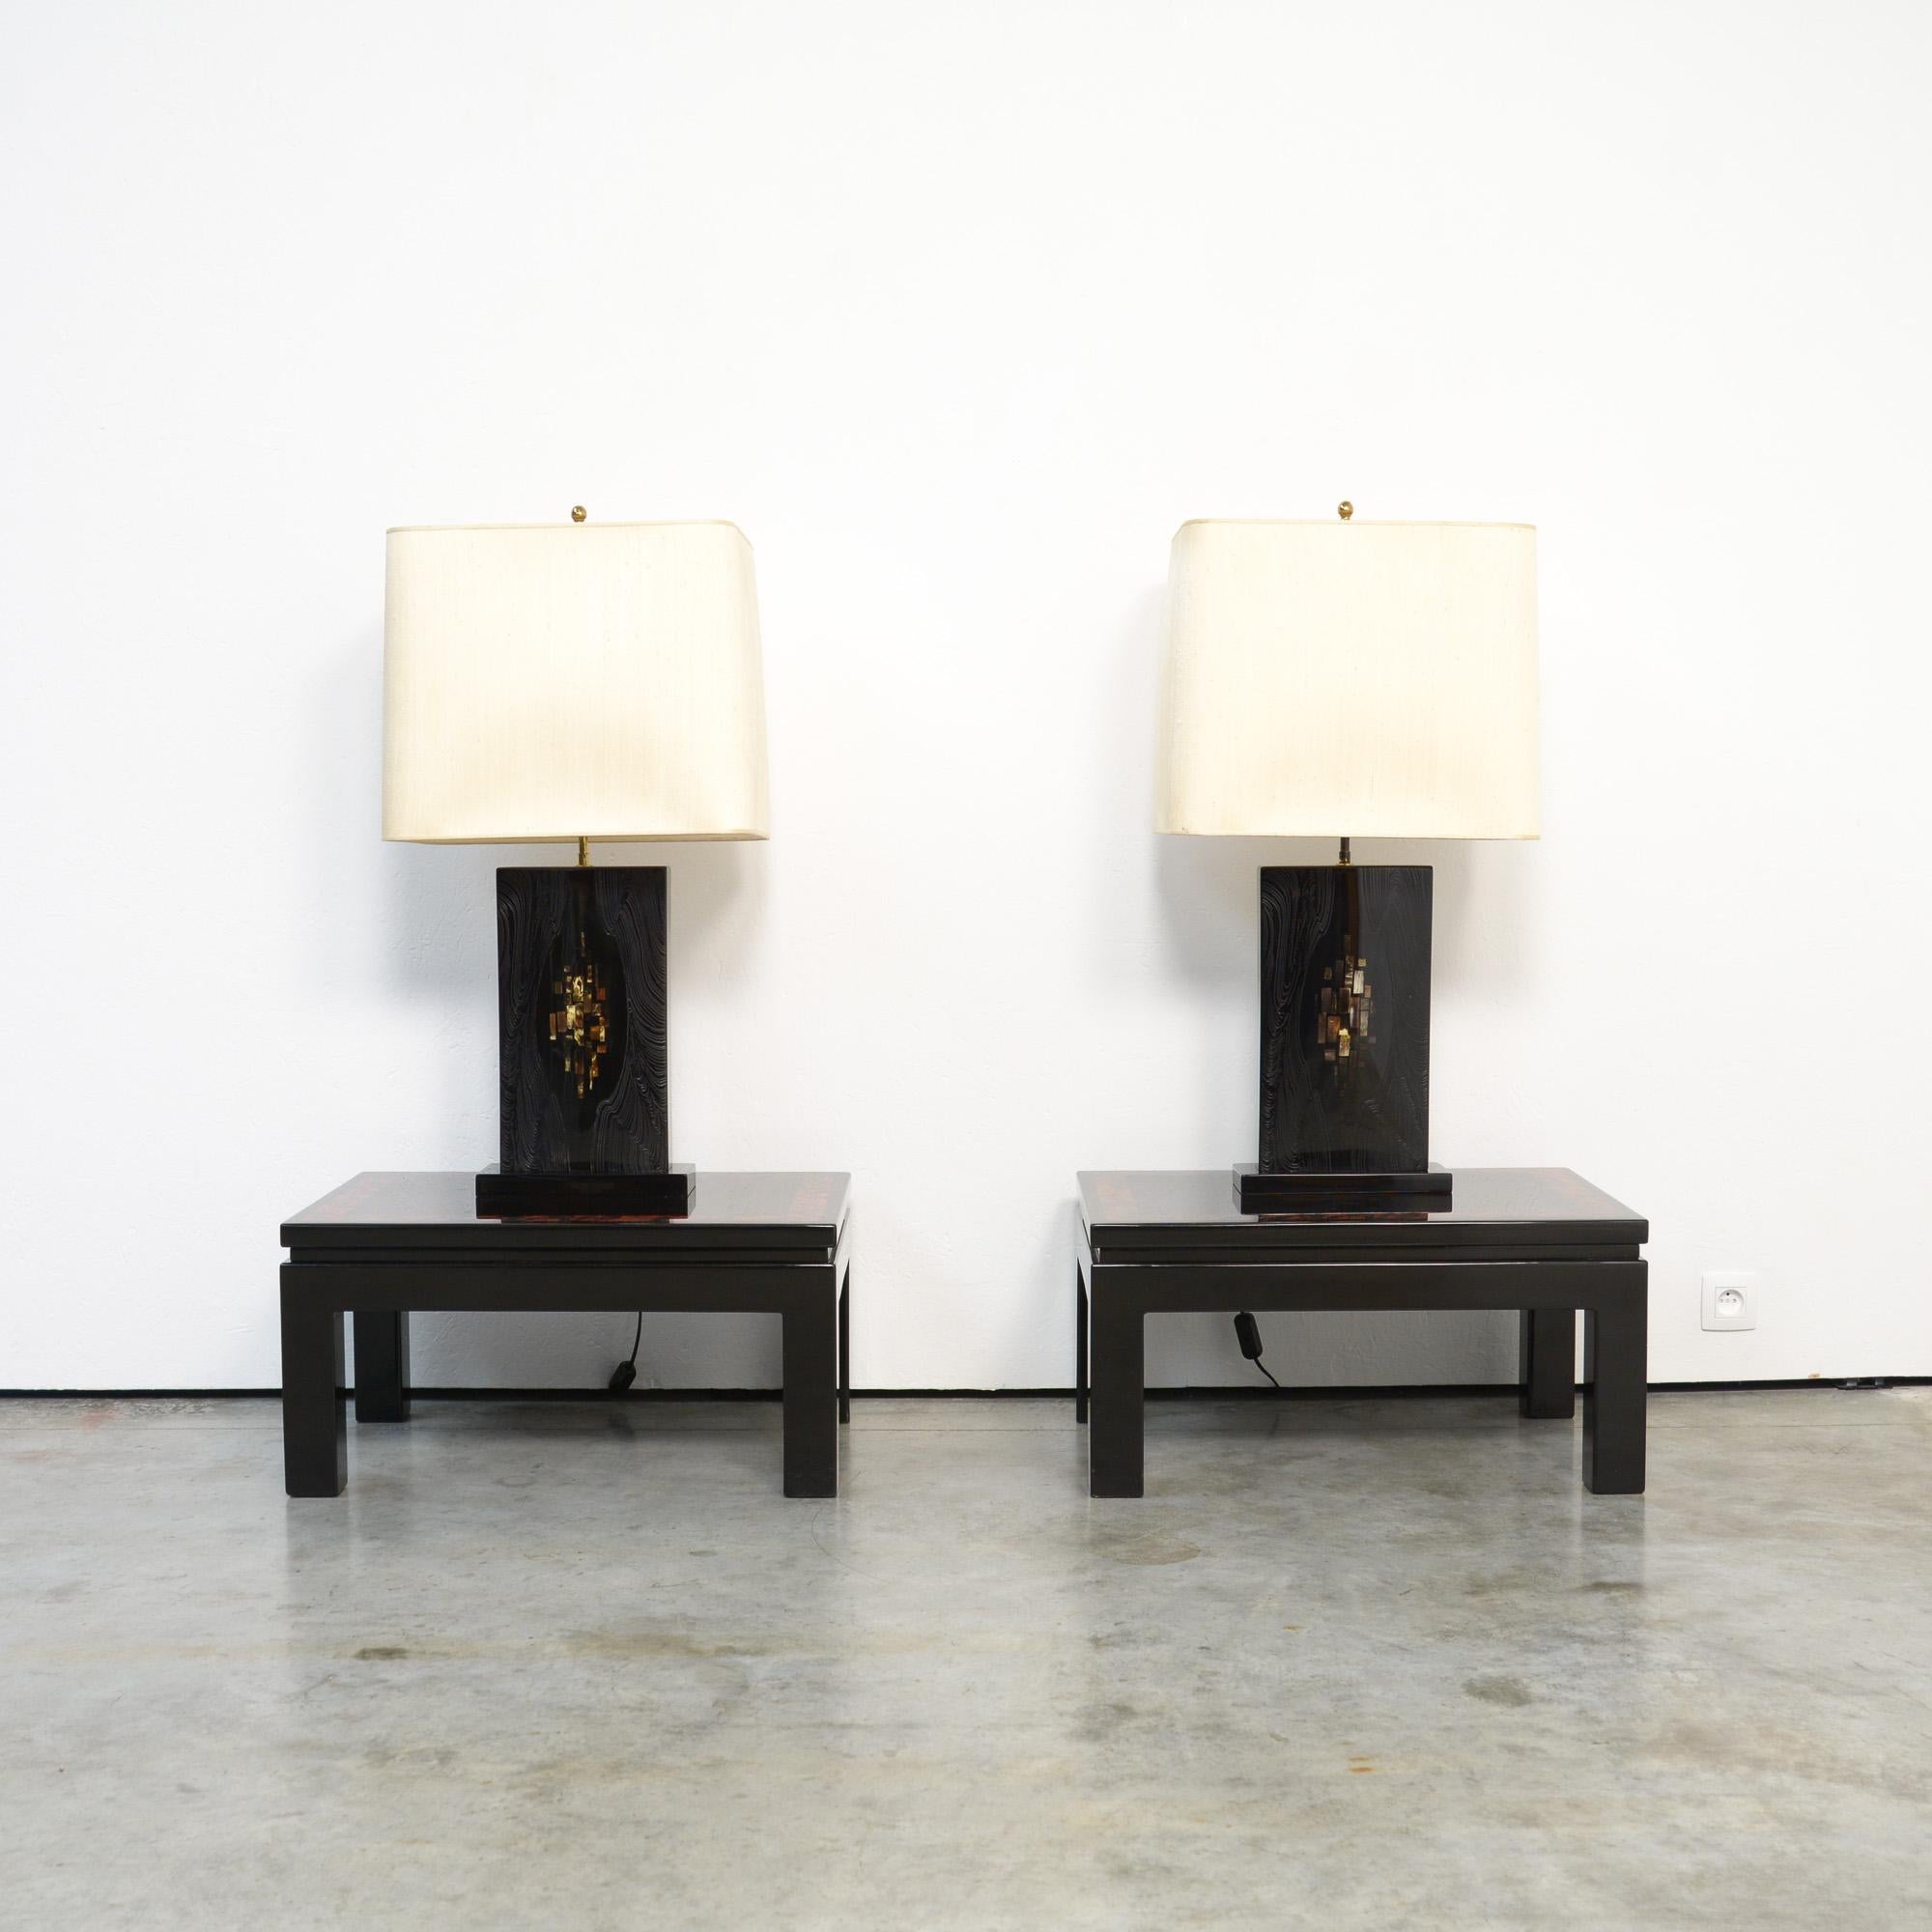 Cette paire exclusive de lampes de table a été conçue et réalisée dans l'atelier de Marcel et Jean-Claude Dresse. Les lampes peuvent être datées des années 1970.
La base est en résine laquée noire brillante avec incrustation d'os. L'artiste a créé